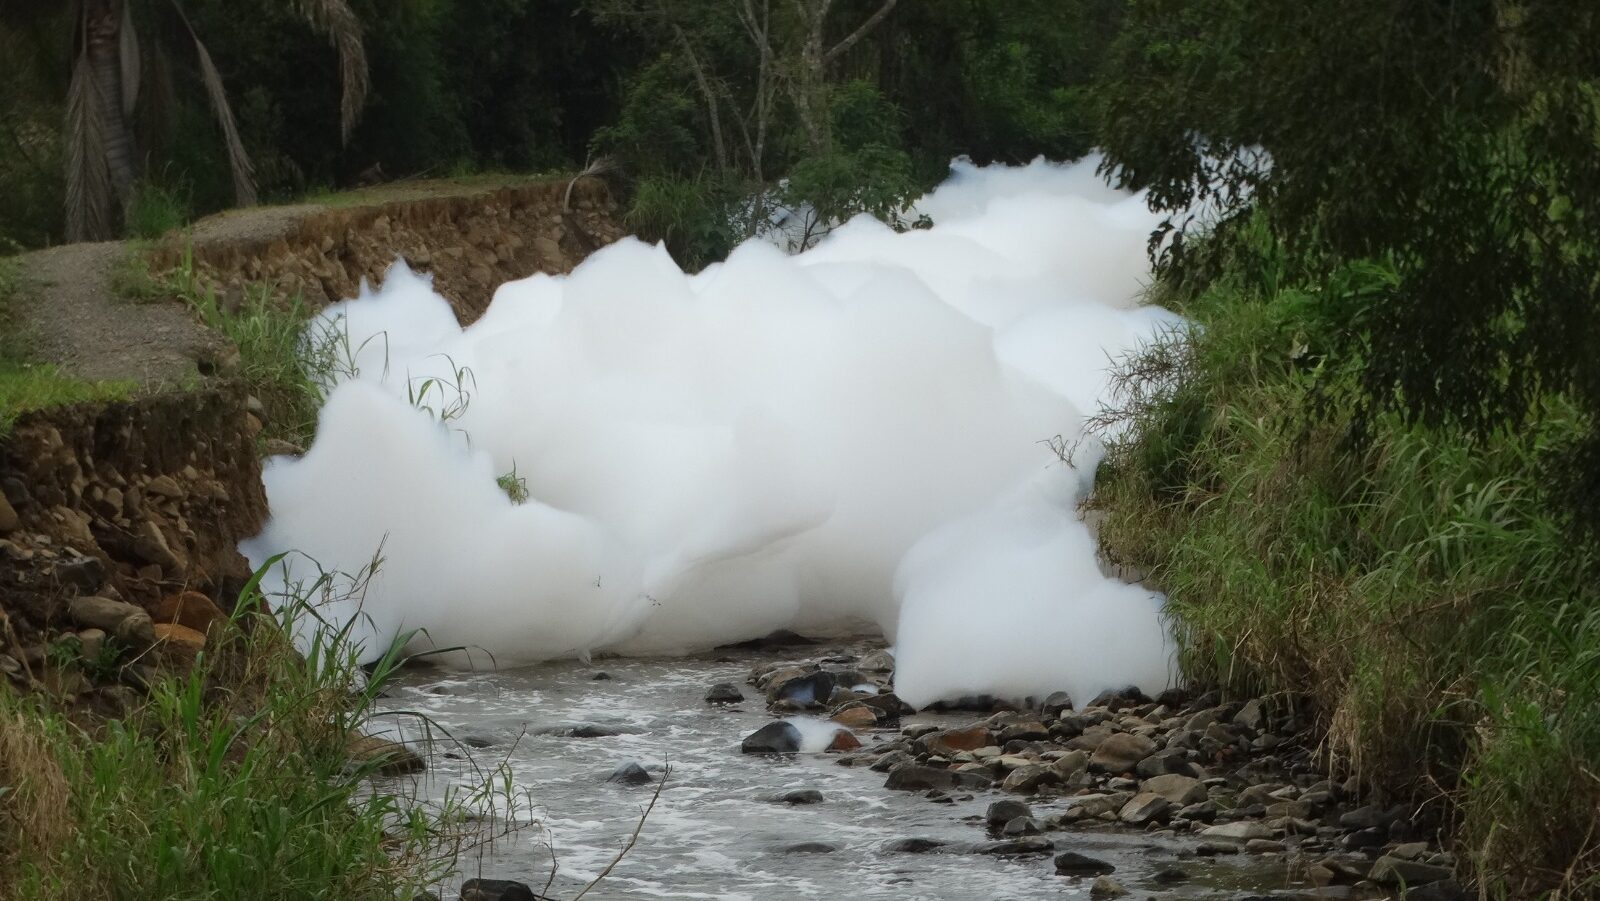 Meio Ambiente da Prefeitura averigua a fonte e o material que foi despejado no rio, em Pouso Redondo